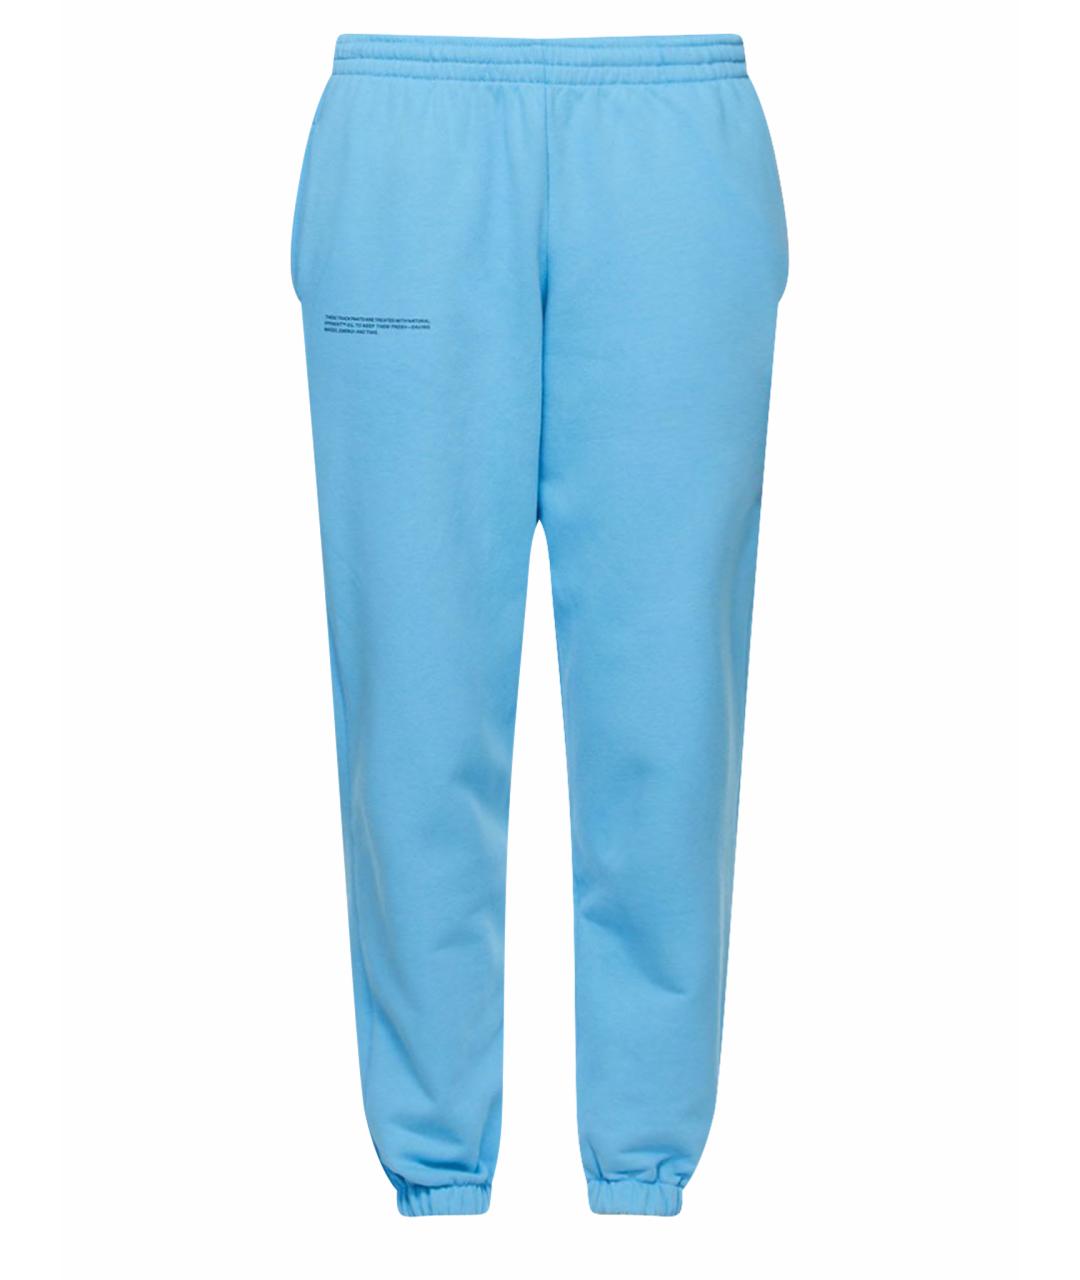 THE PANGAIA Голубые хлопковые спортивные брюки и шорты, фото 1